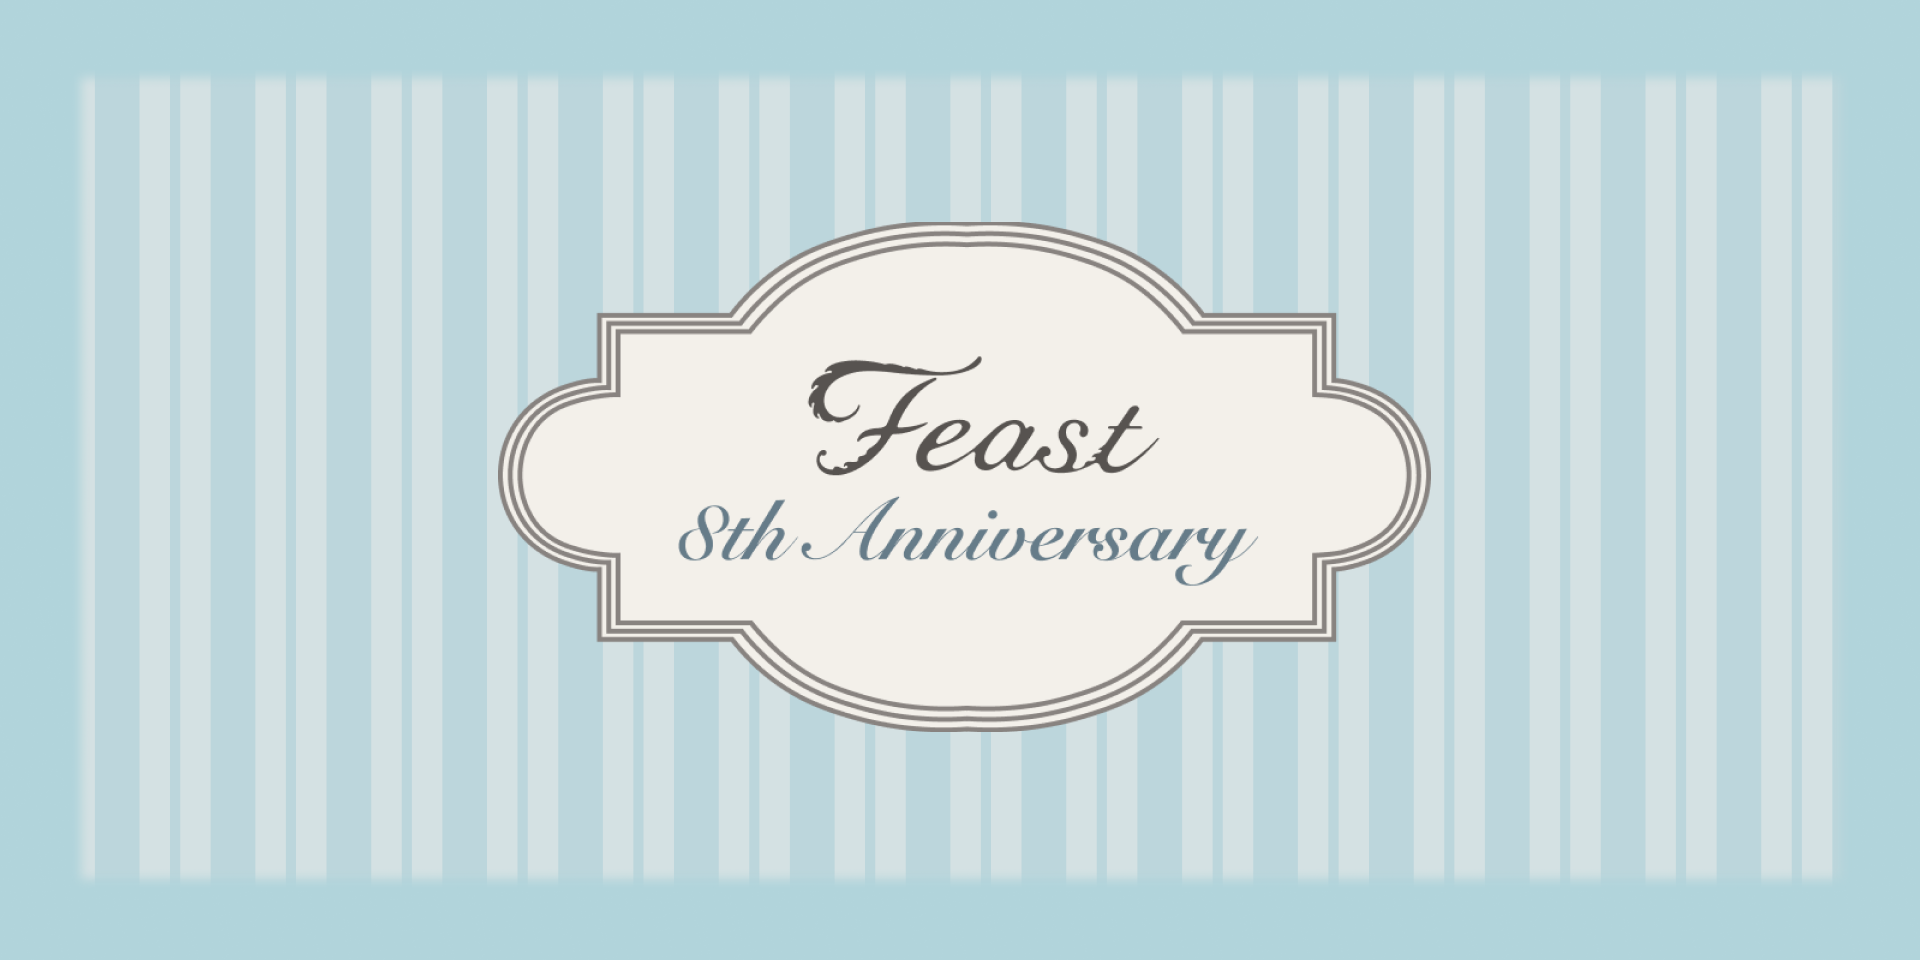 feast 8th anniversary Fair開催！【8月3日(水)20:00〜14日(日)23:59】